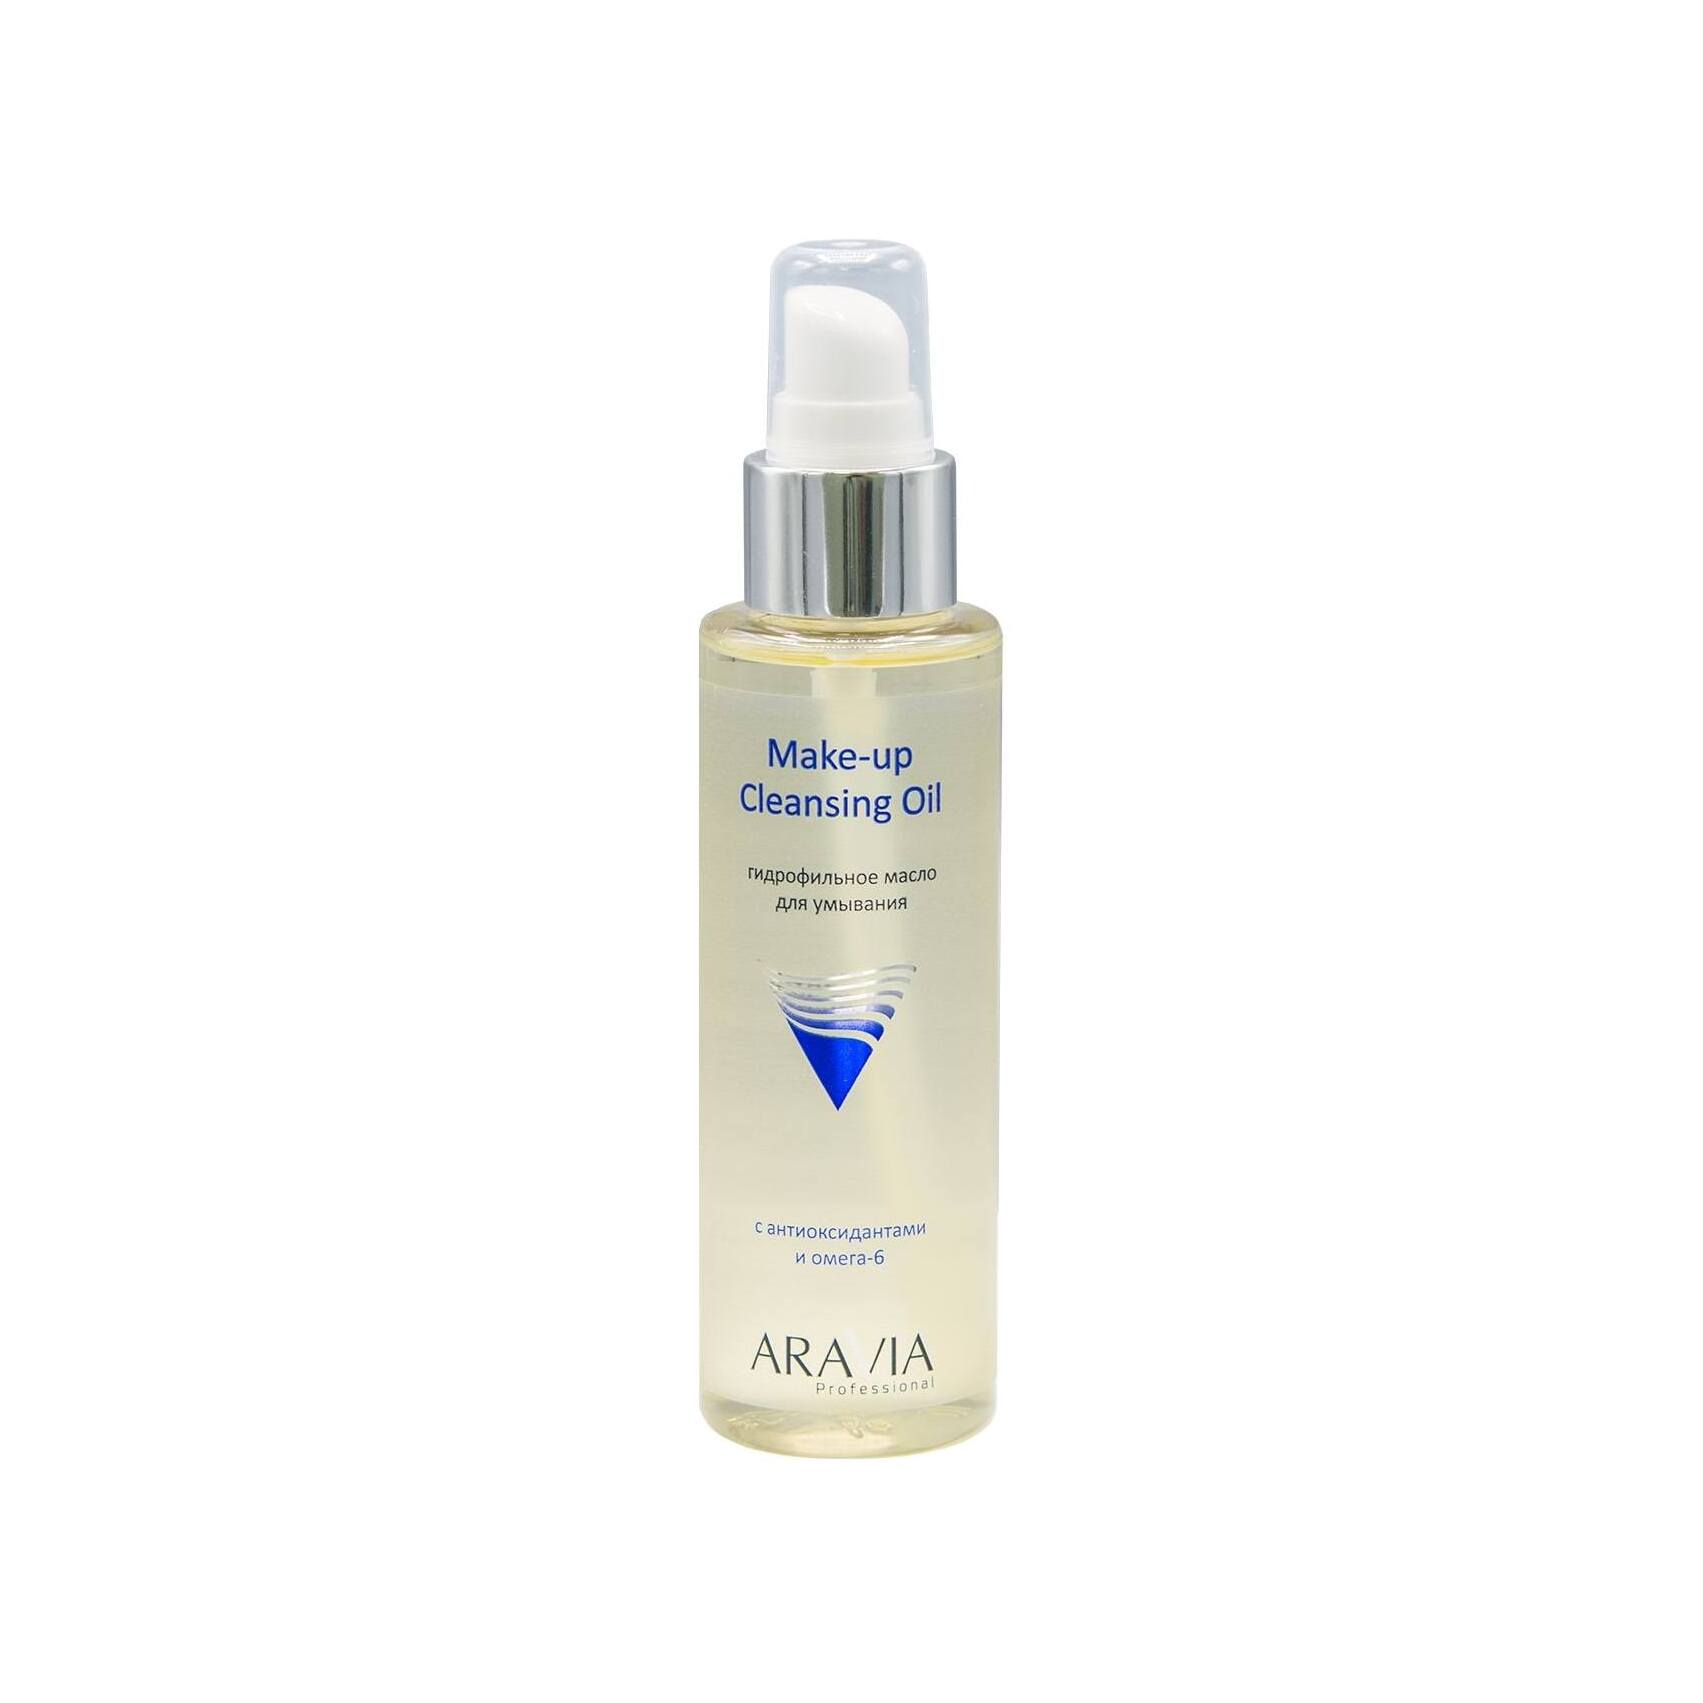 Масло гидрофильное для умывания с антиоксидантами и Омега-6 Make-up Cleansing Oil  VISAGEHALL